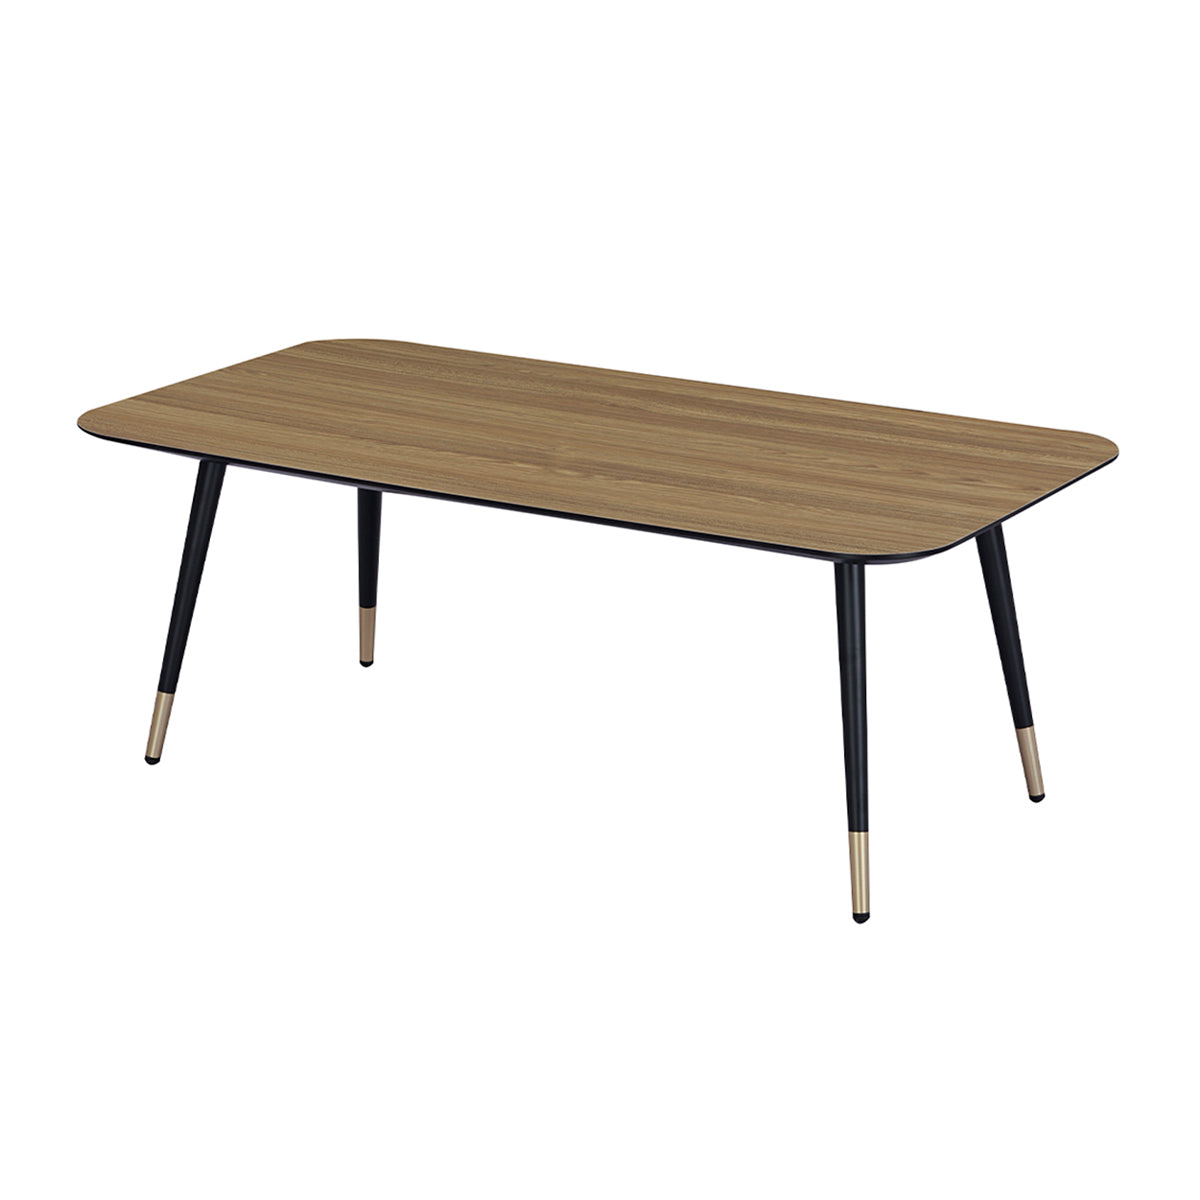 Table basse rectangulaire dimensions 110 x 60 cm en finition mélaminé imitation chêne - MATIS